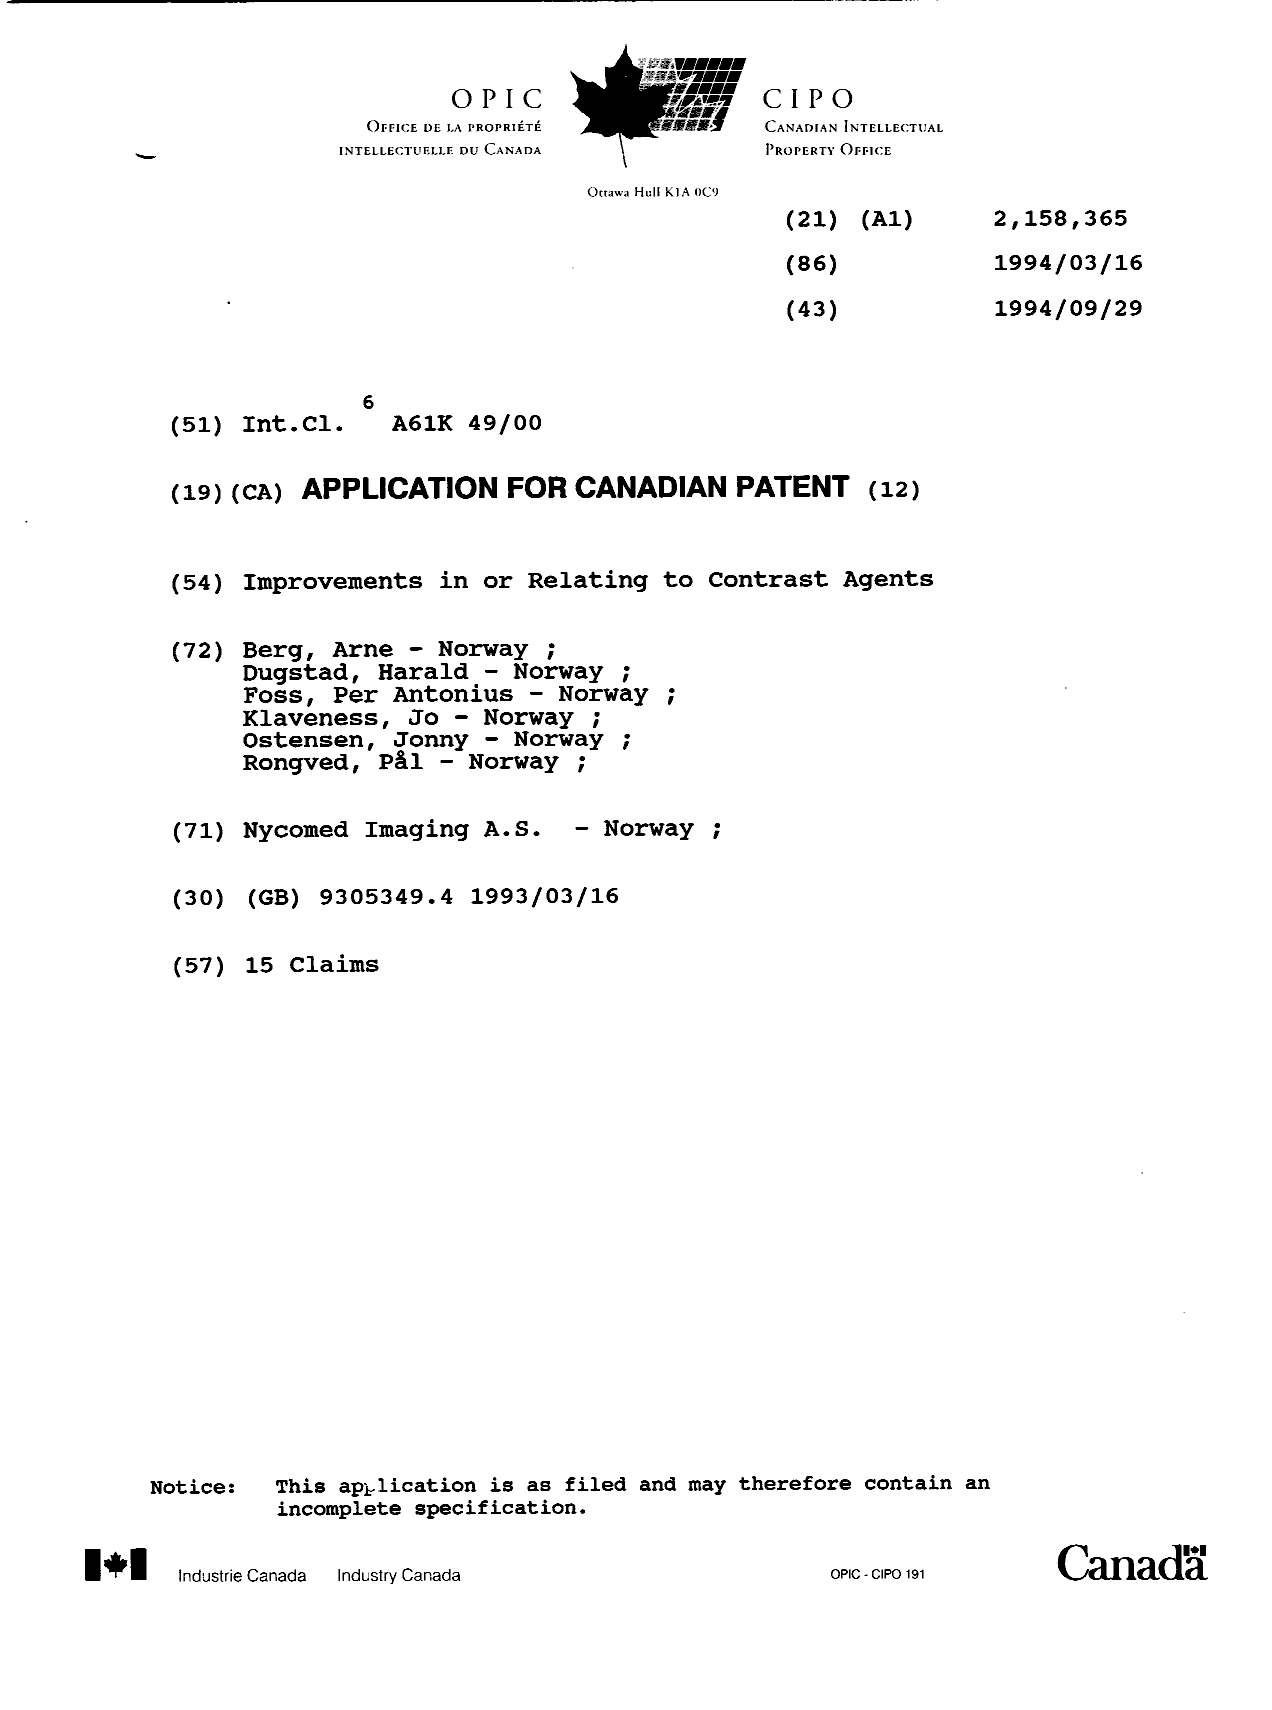 Document de brevet canadien 2158365. Page couverture 19960220. Image 1 de 1